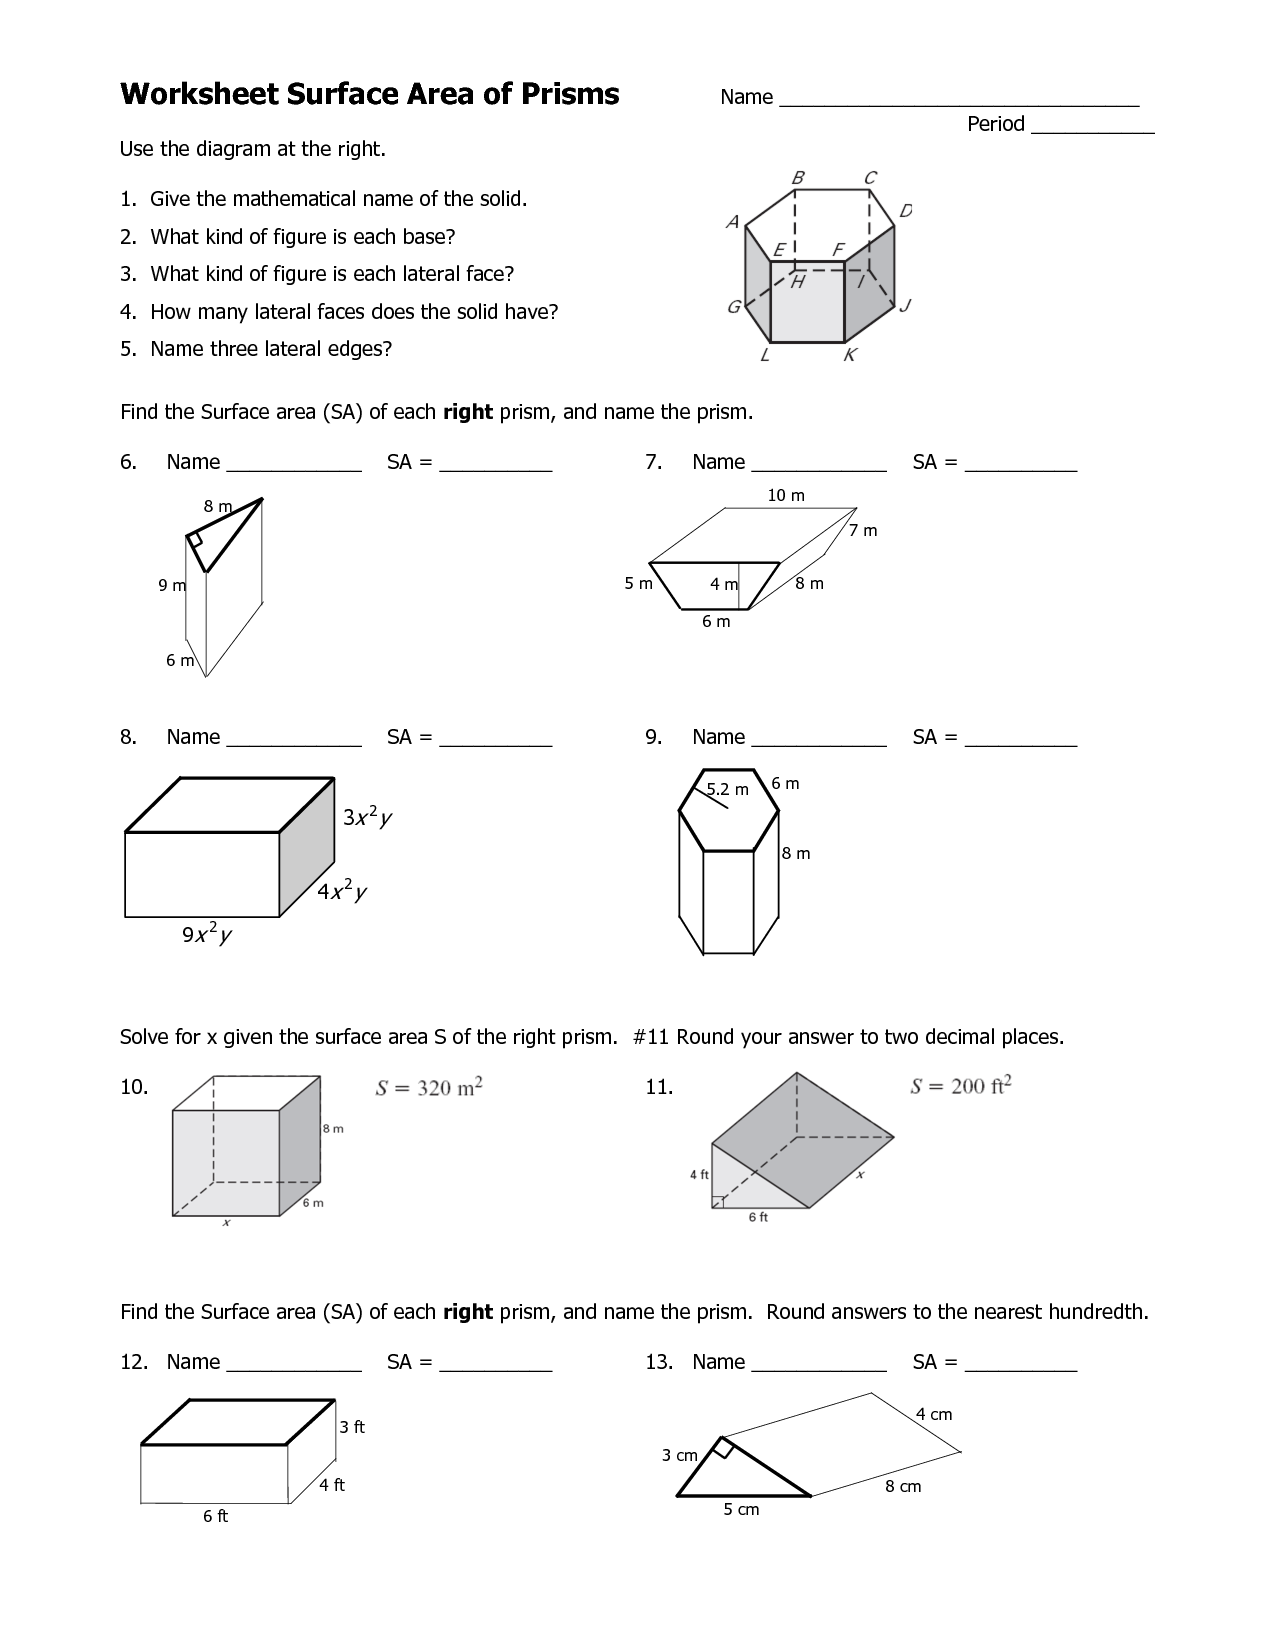 volume-of-cylinder-and-triangular-prism-worksheet-saveinspire